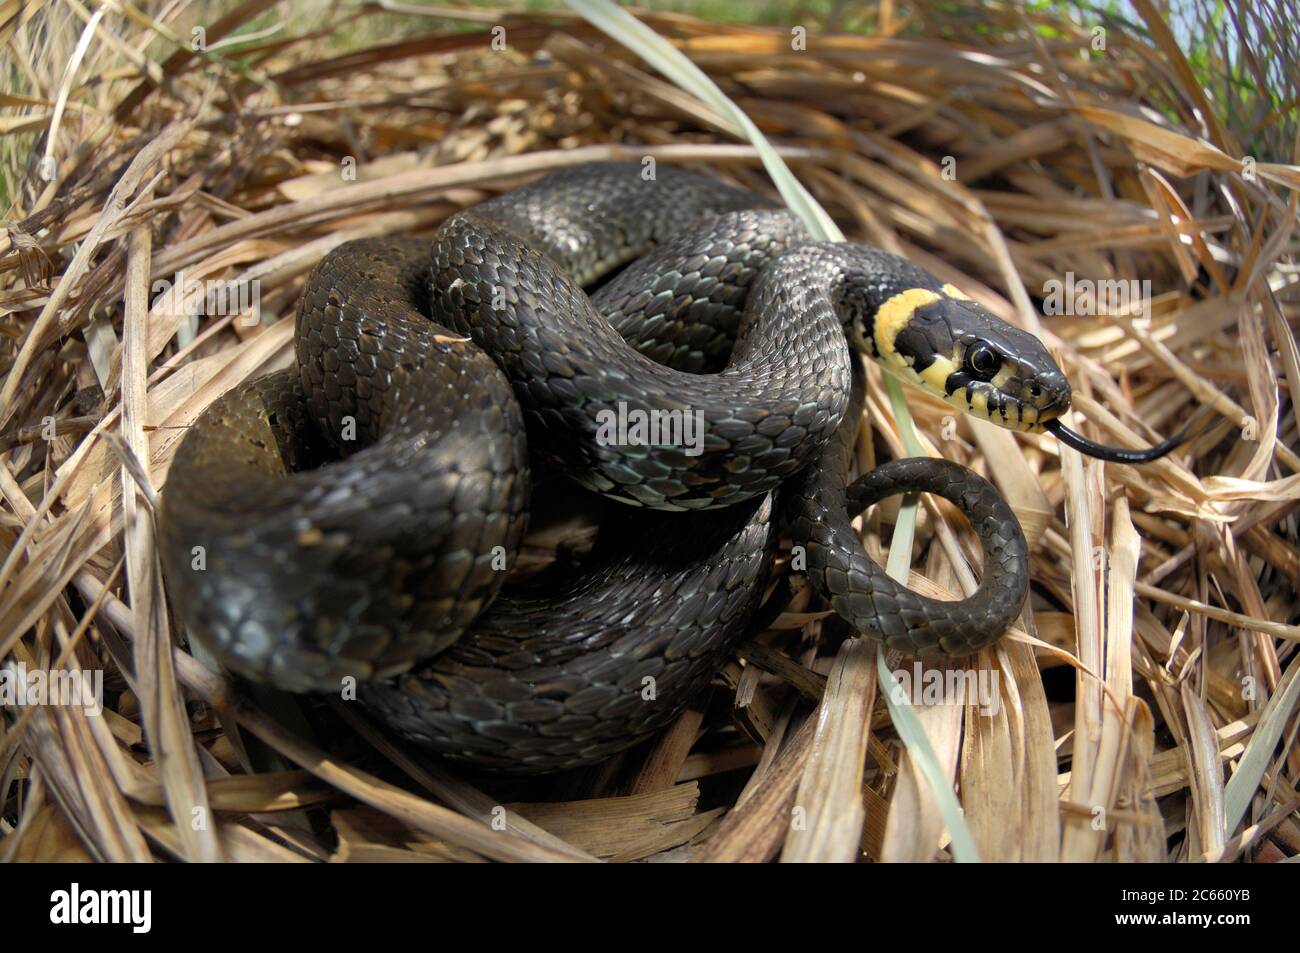 La serpiente de hierba, a veces llamada serpiente ringada o serpiente de agua (Natrix natrix) es una serpiente europea no venenosa. Foto de stock